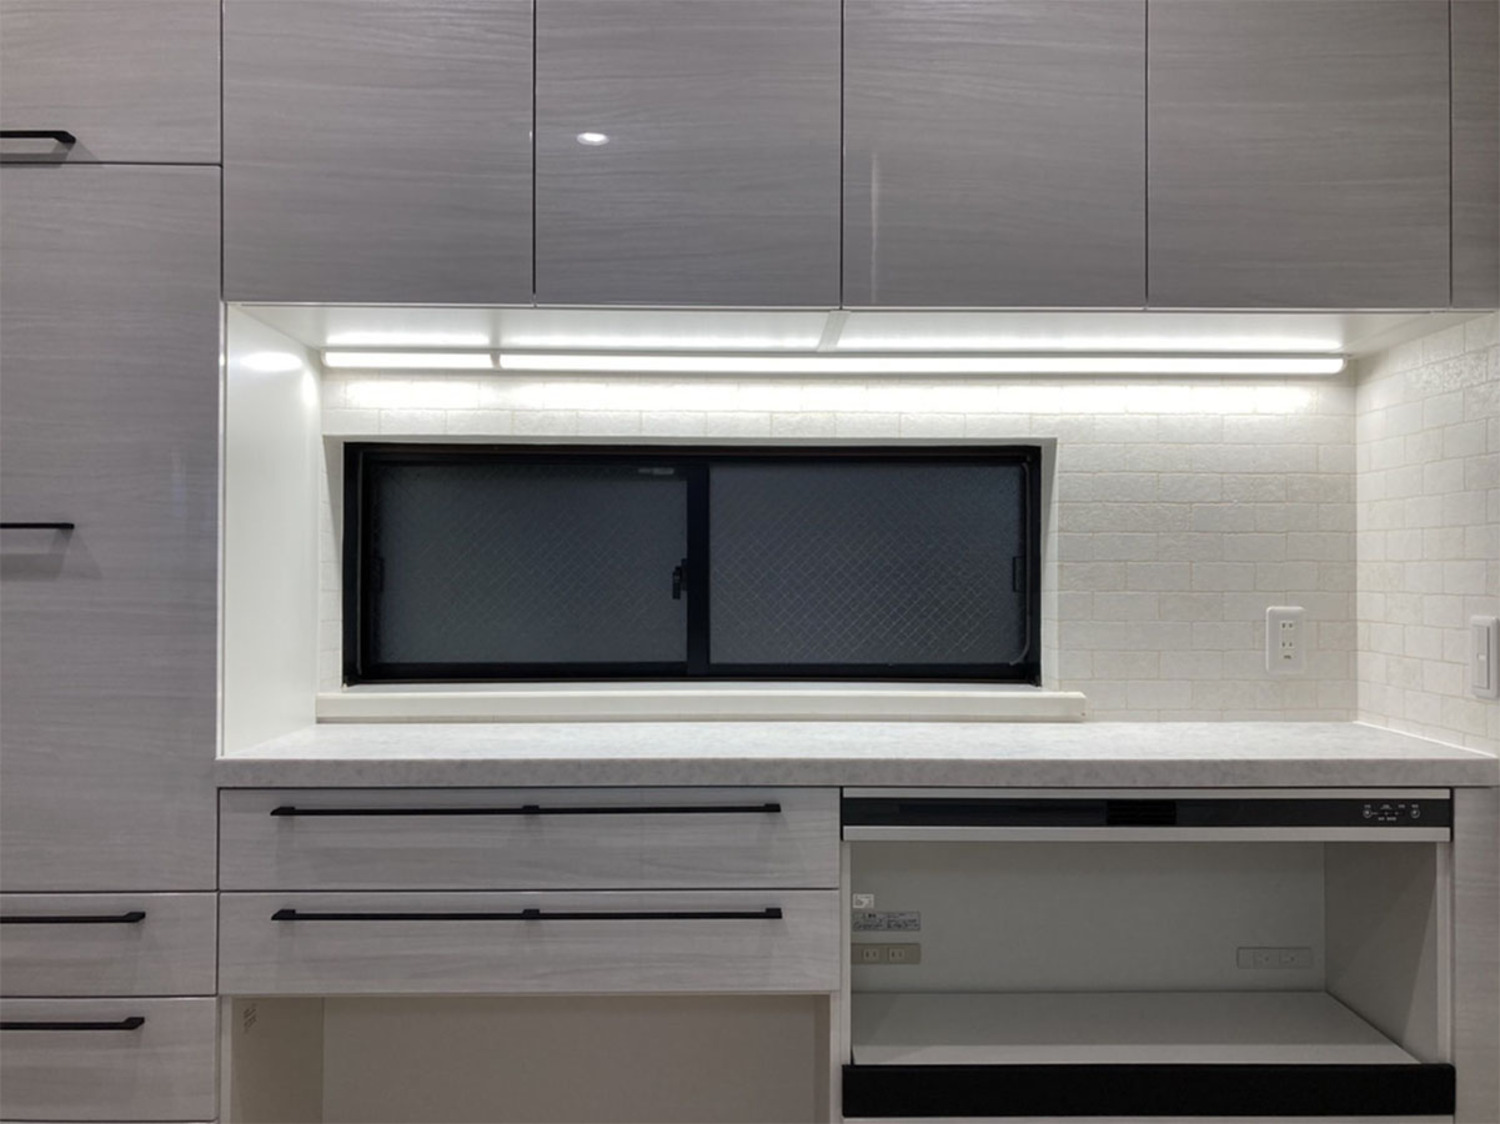 機能とデザインの良さを両立した理想的なキッチン空間！